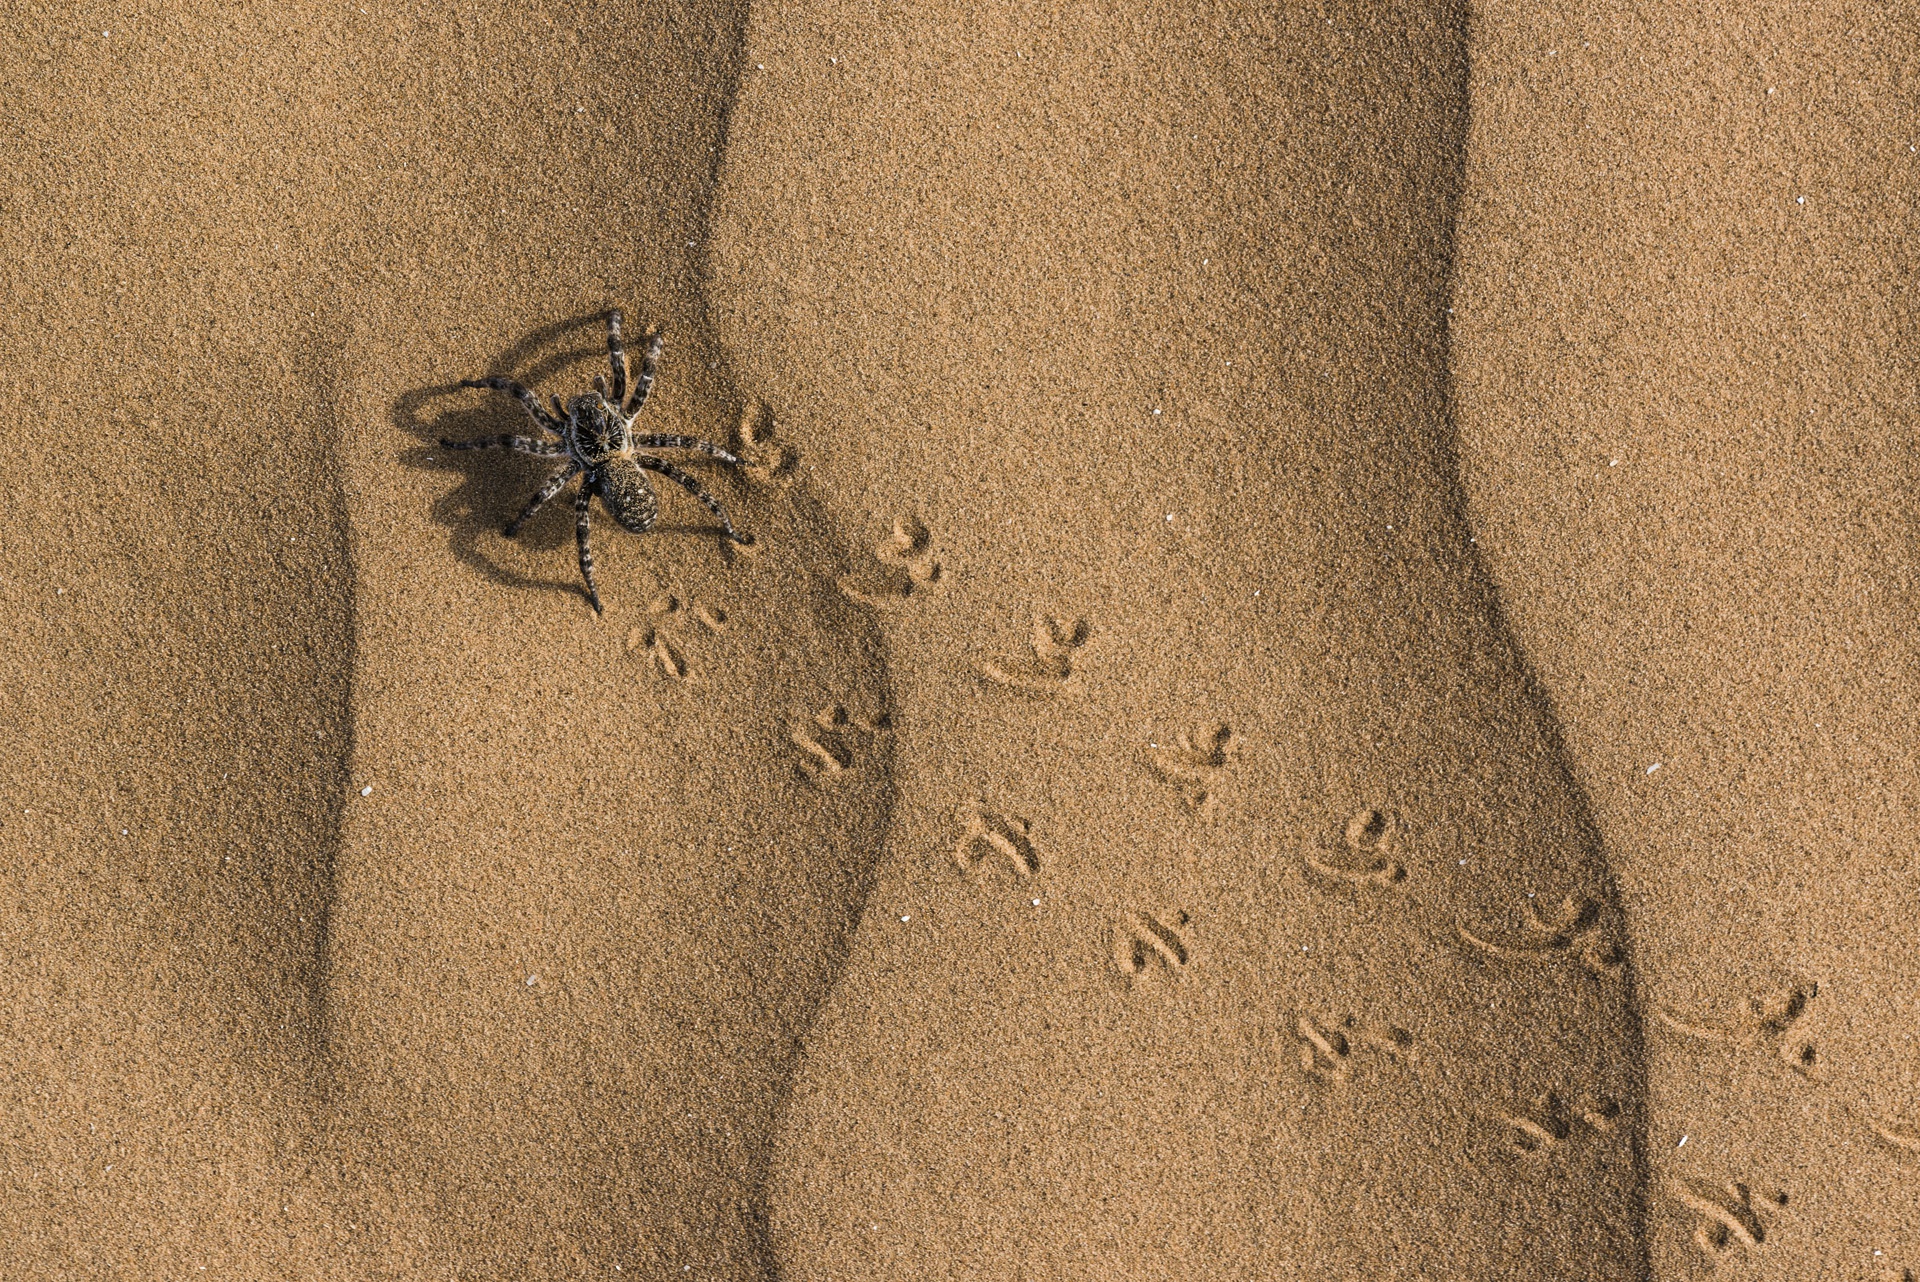 След паука на песке